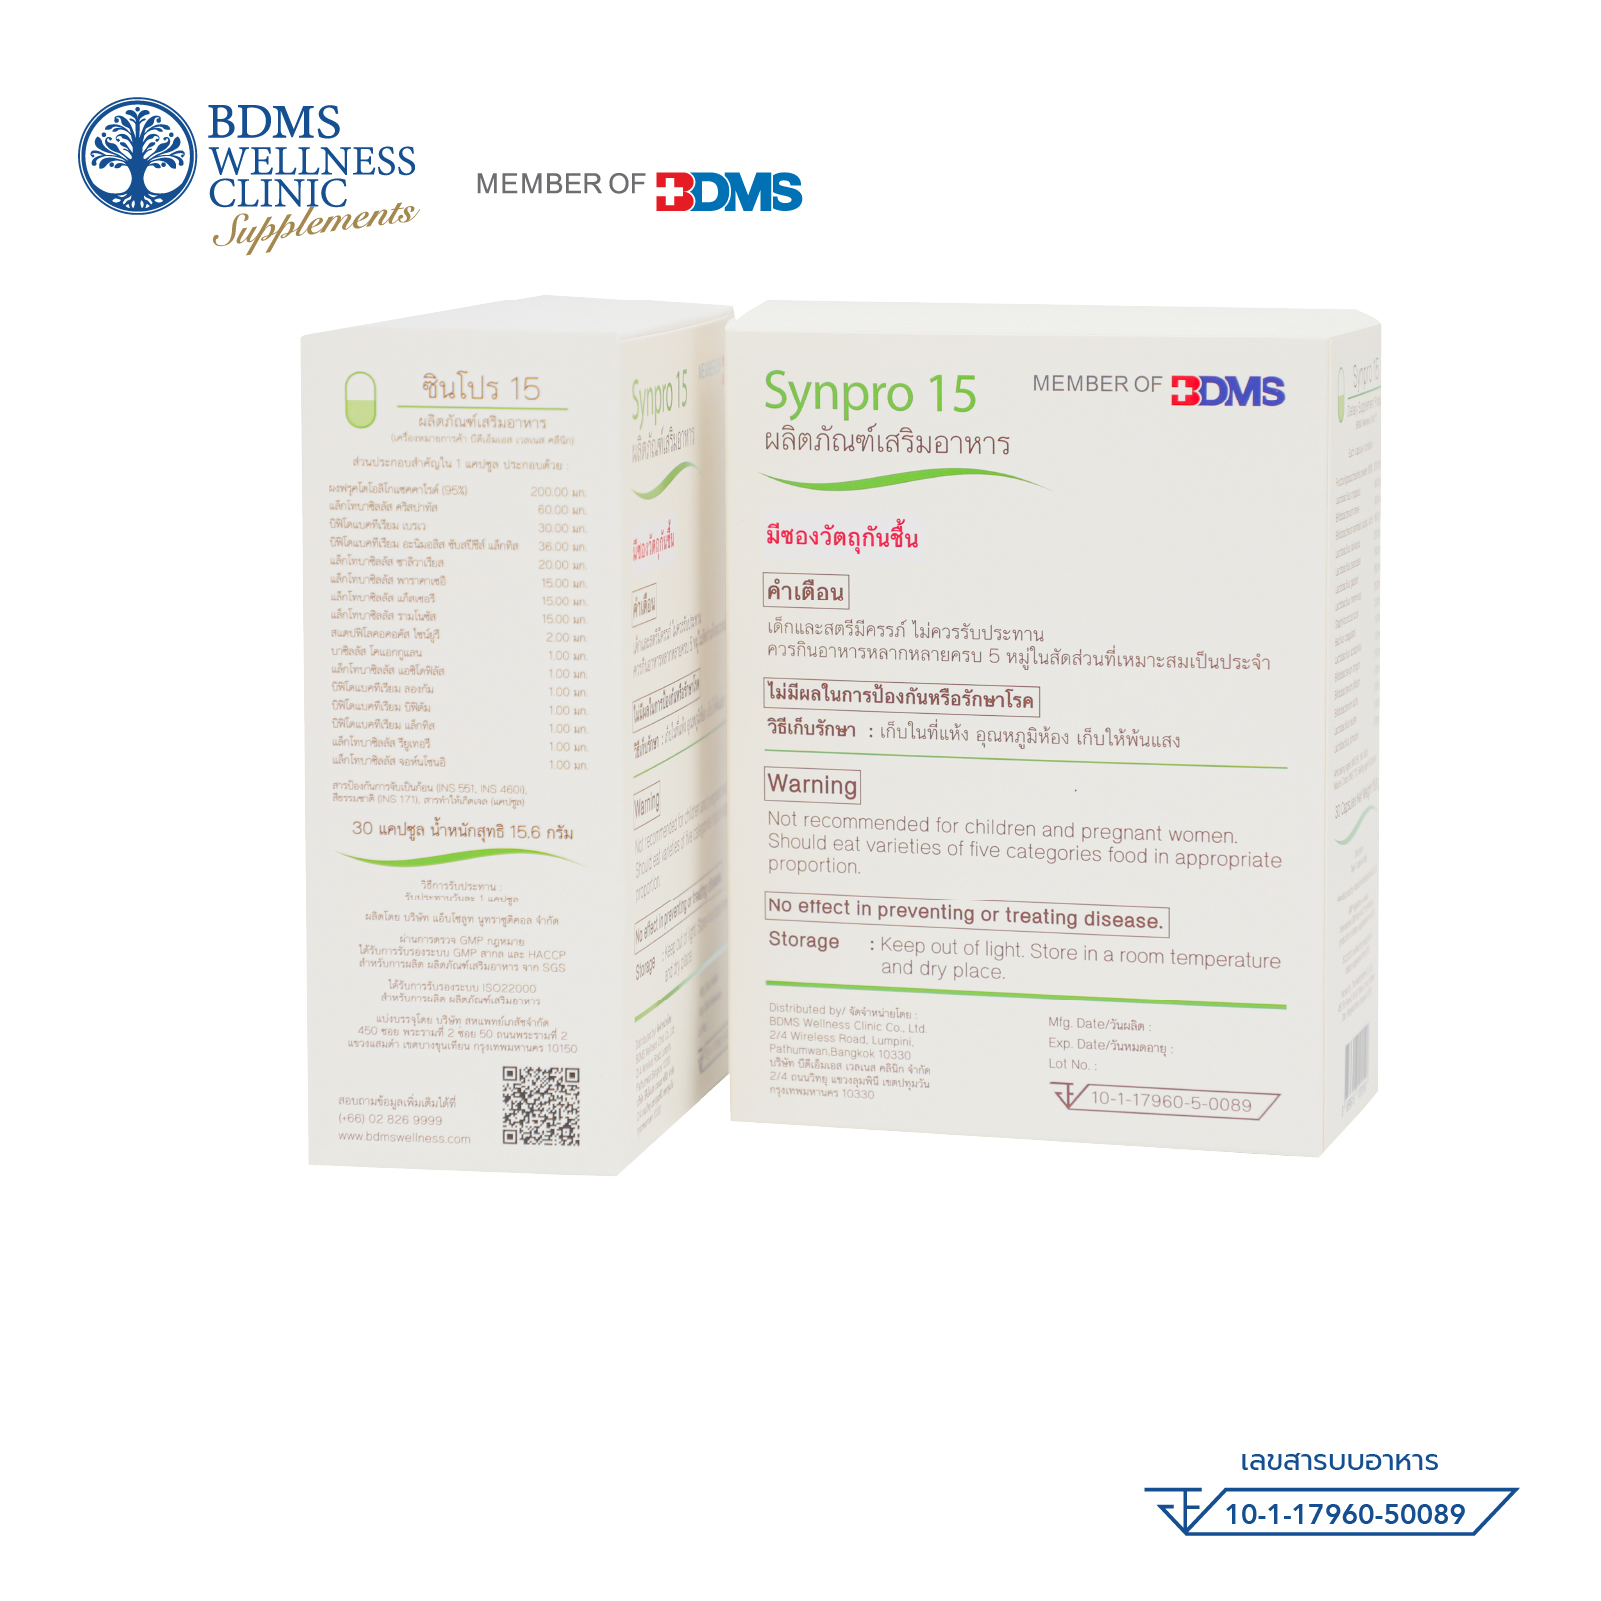 Synpro 15 ผลิตภัณณ์เสริมอาหาร โพรไบโอติกส์และพรีไบโอติกส์